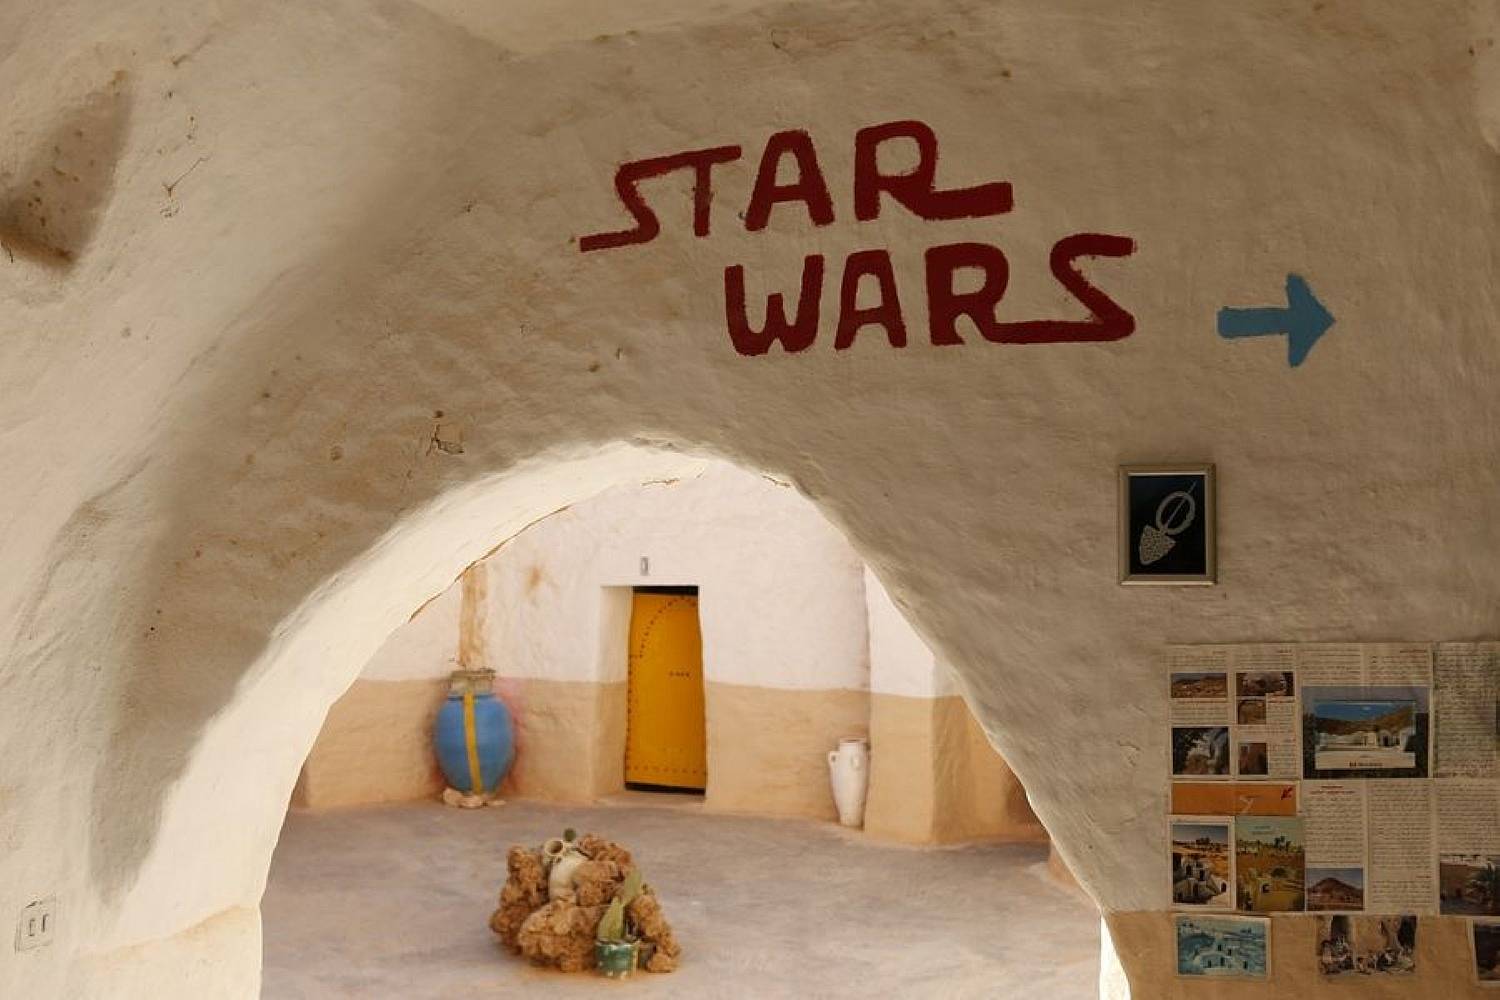 Immersion dans le désert et découverte des sites de Star Wars en quatre jours